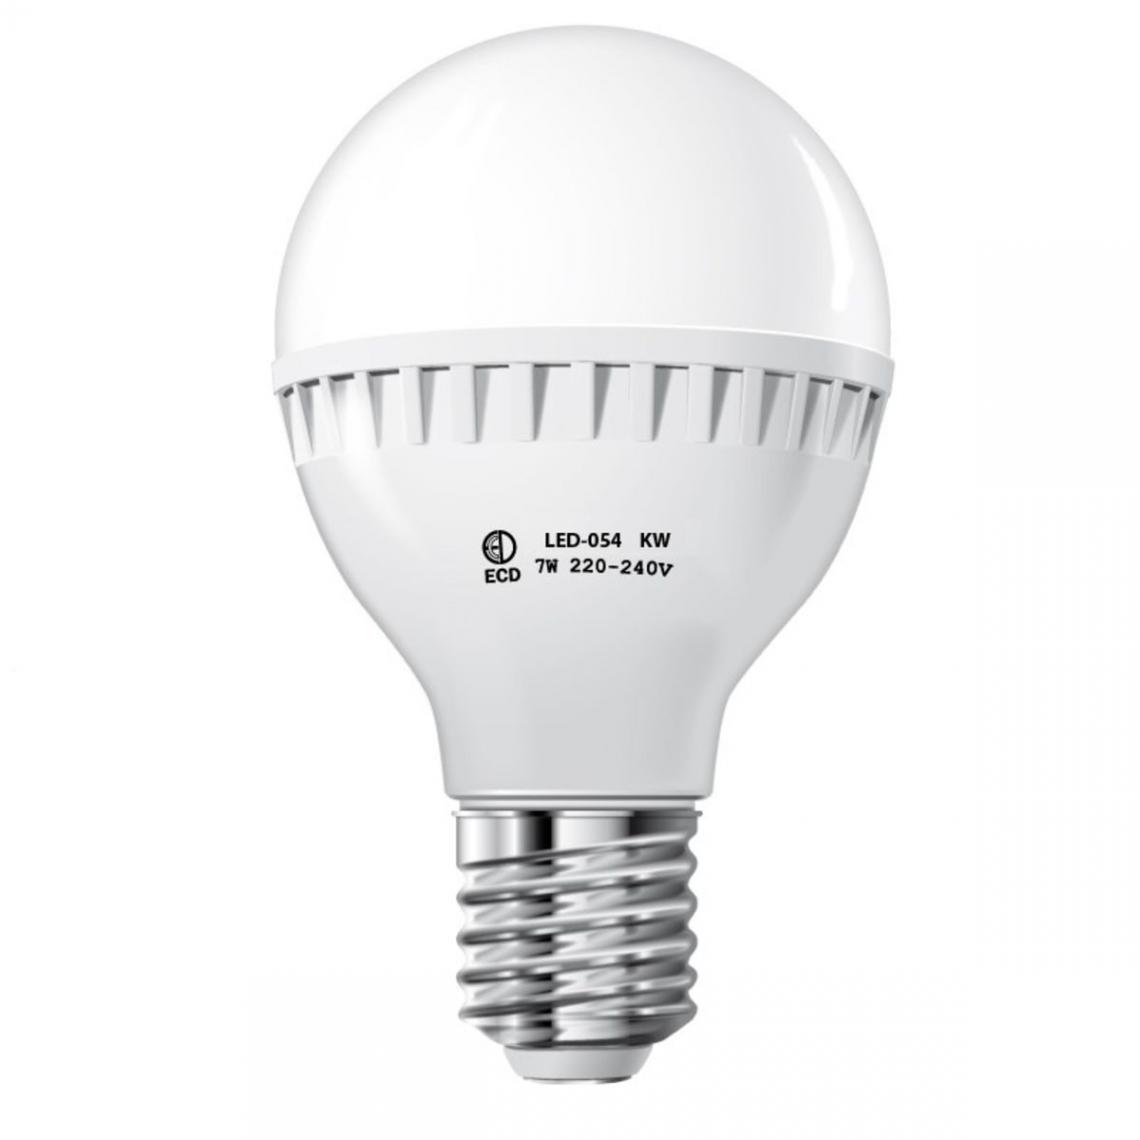 Ecd Germany - ECD Germany 7W E27 LED Lampe | 6000 Kelvin blanc froid | 458 lumens | 220-240 V | remplace une ampoule halogène de 45 W | Ampoules à économie d'énergie - Ampoules LED